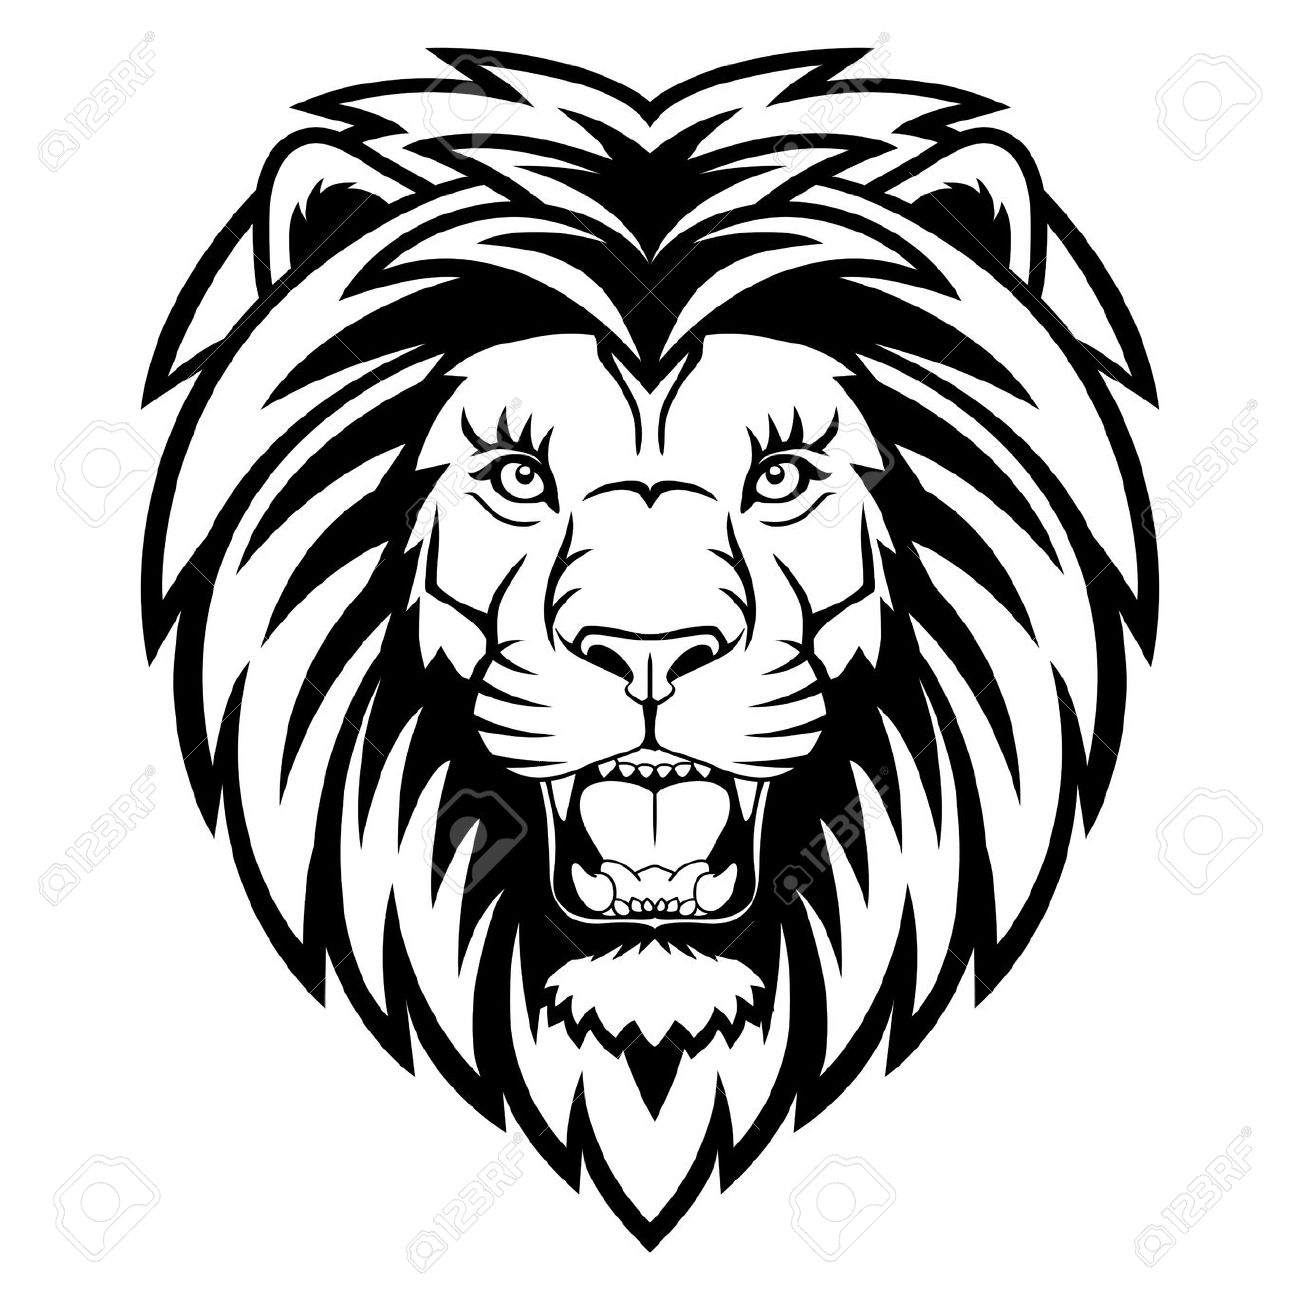 lion head: A Lion head logo.